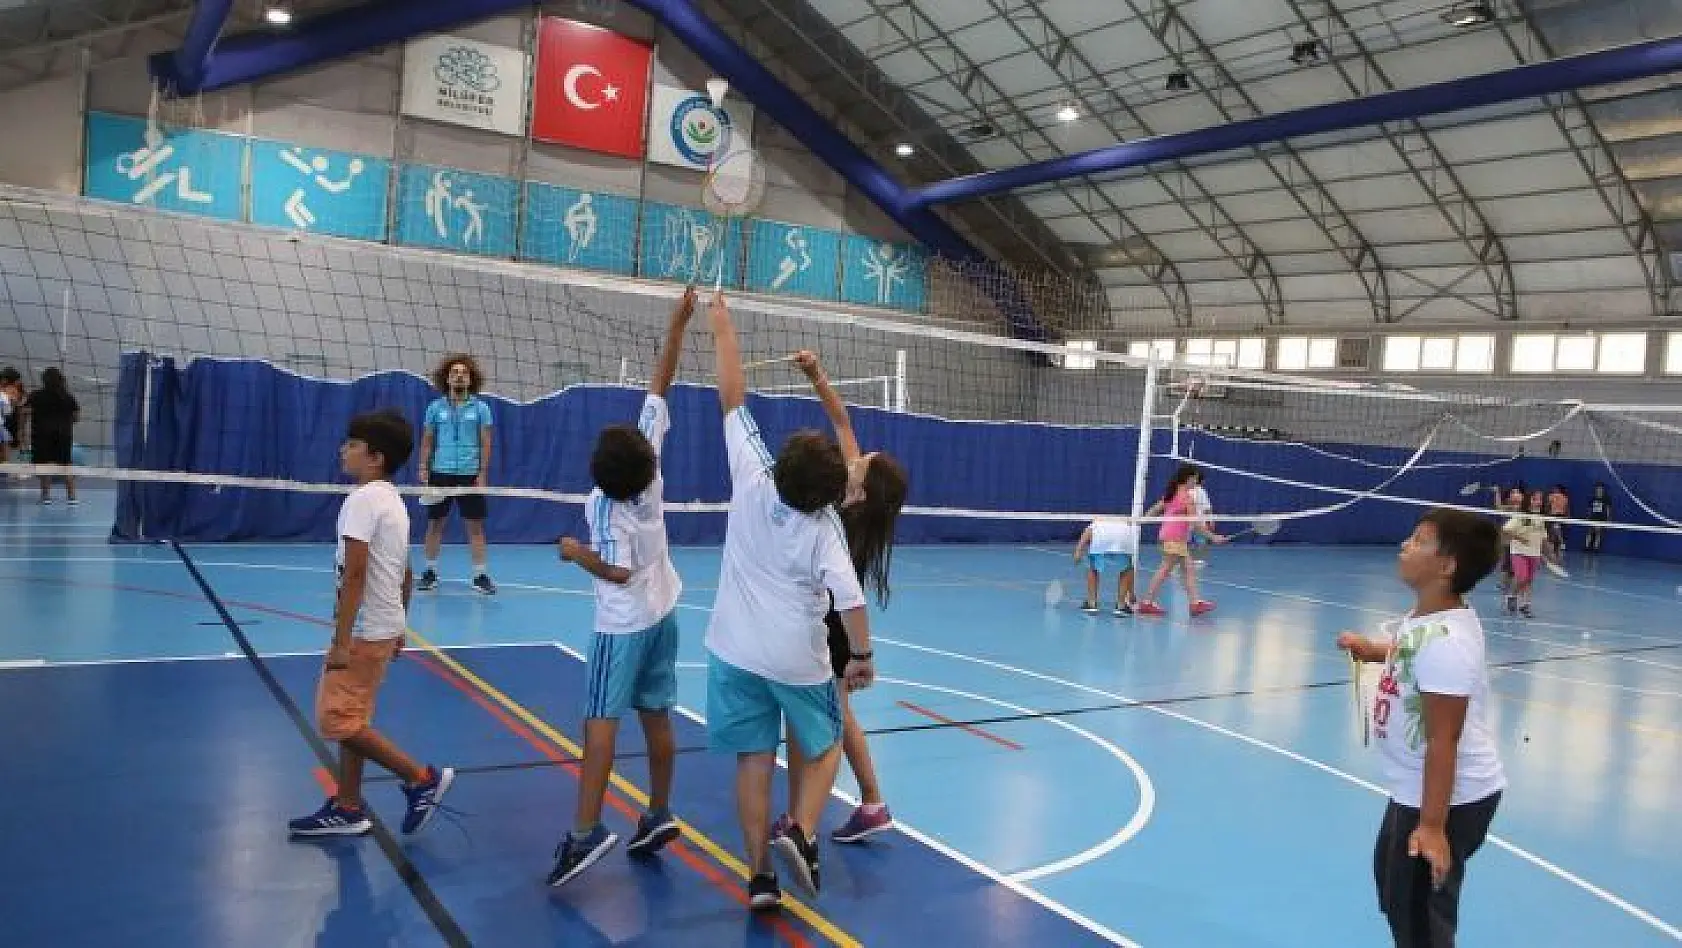 Nilüfer'de kış spor okulları başlıyor